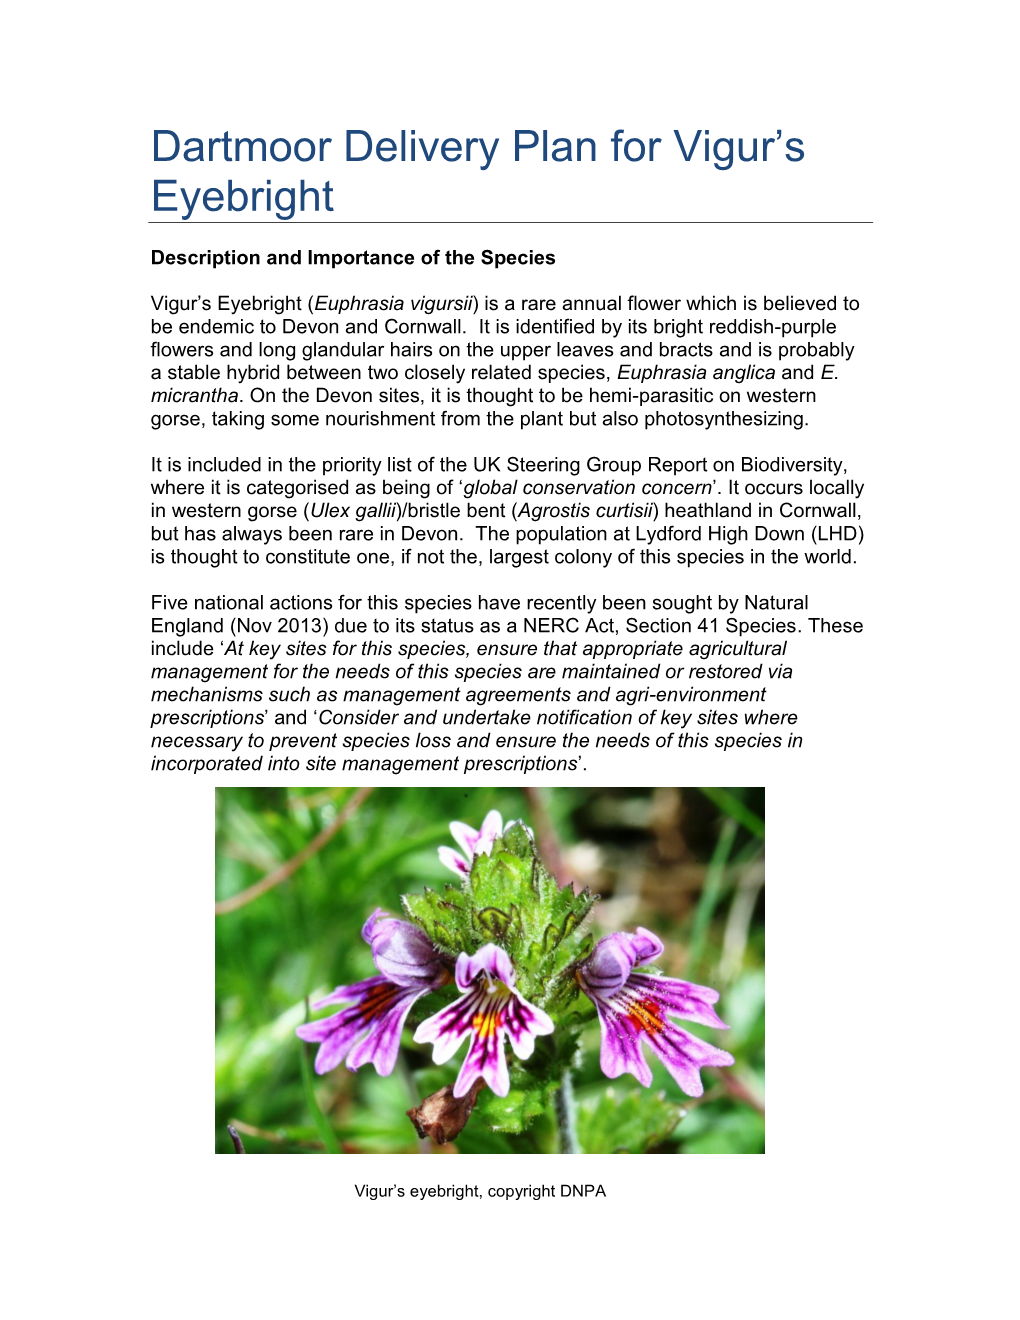 Dartmoor Delivery Plan for Vigur's Eyebright